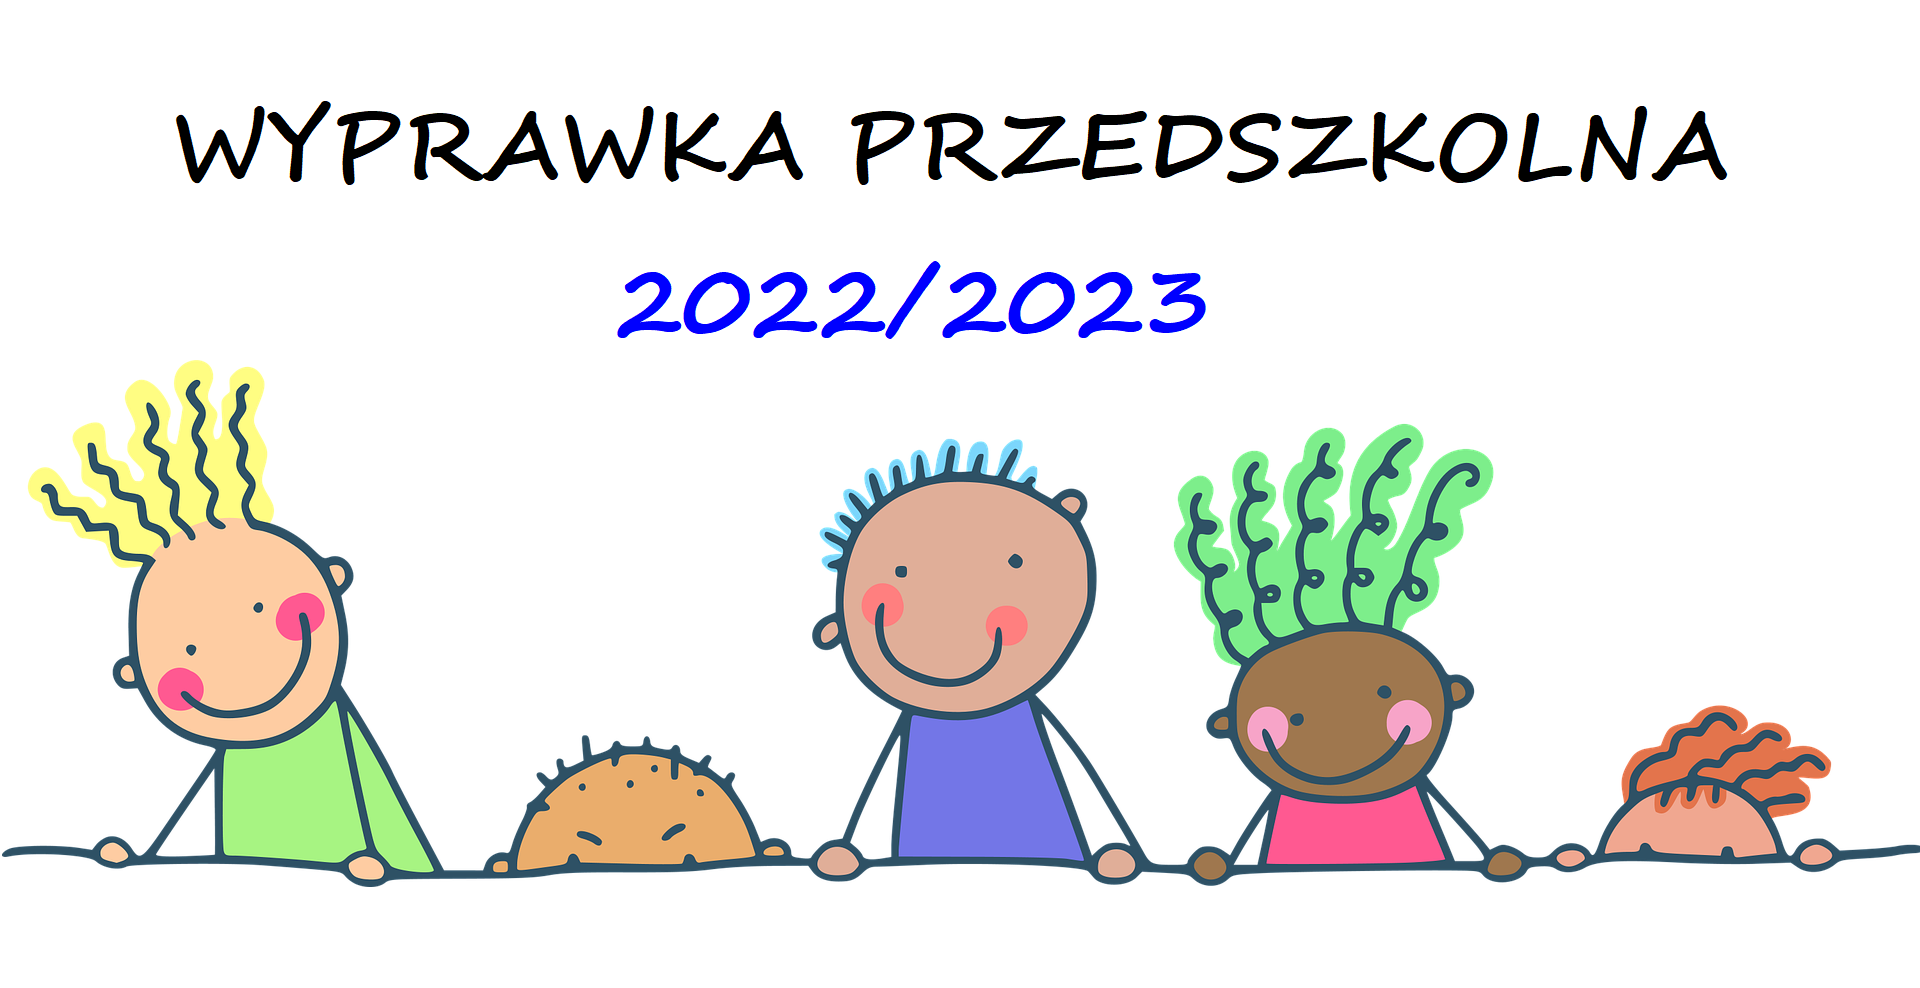 Wyprawka przedszkolna 2022/2023